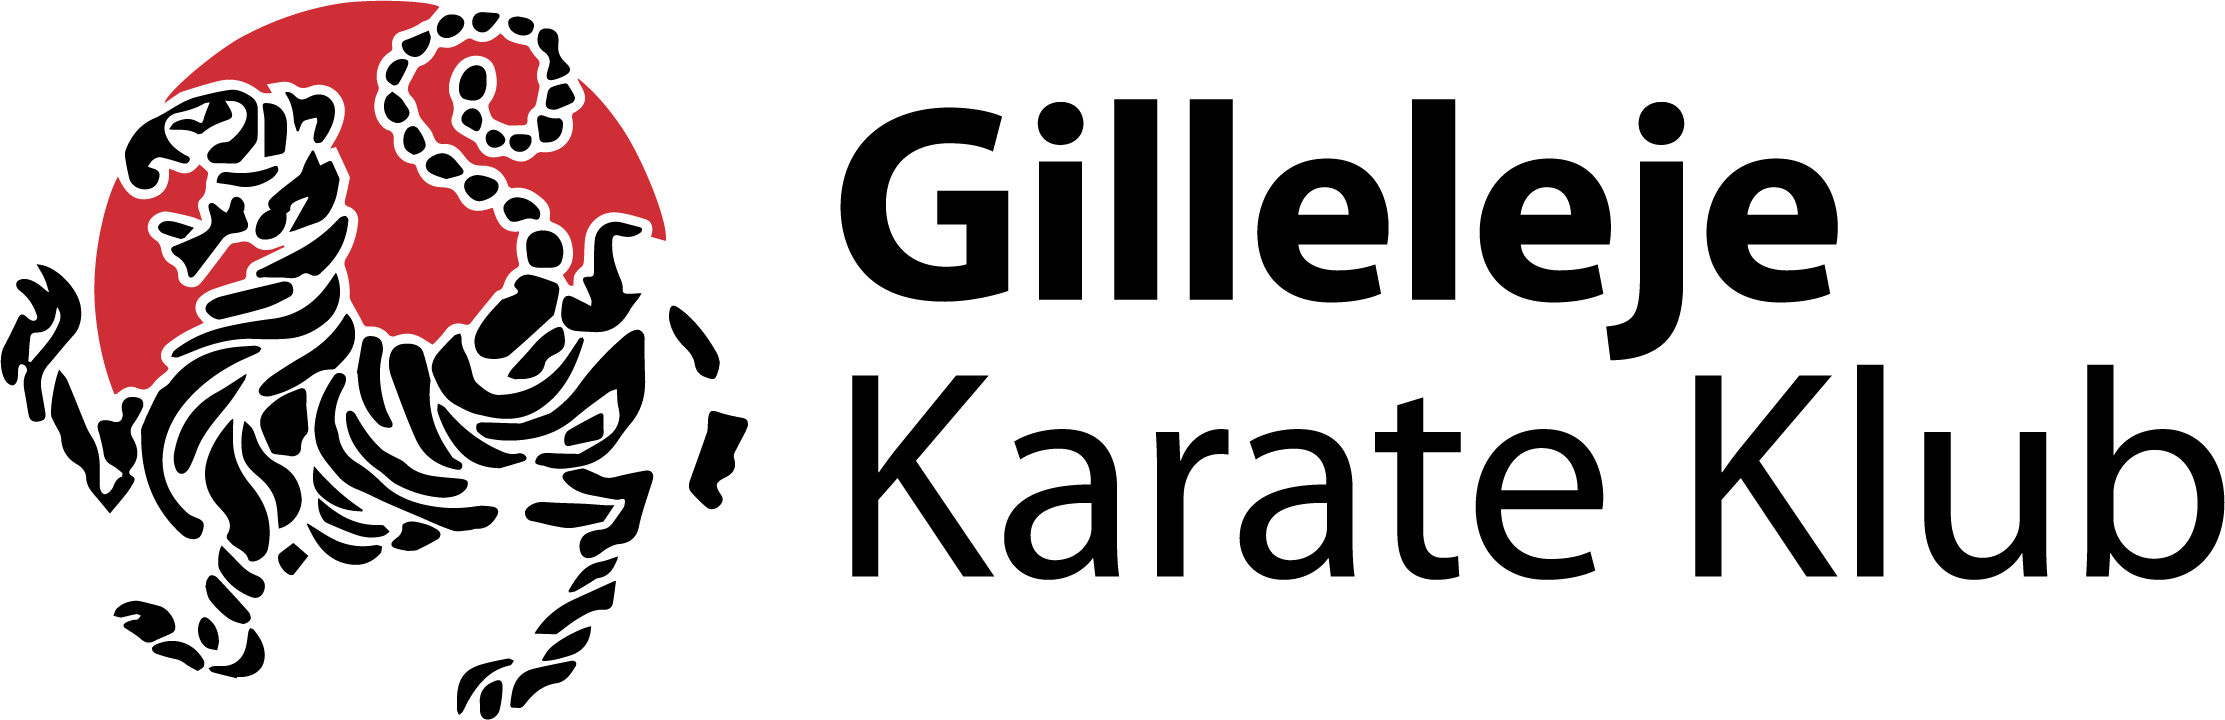 Gilleleje_karate_klub_logo